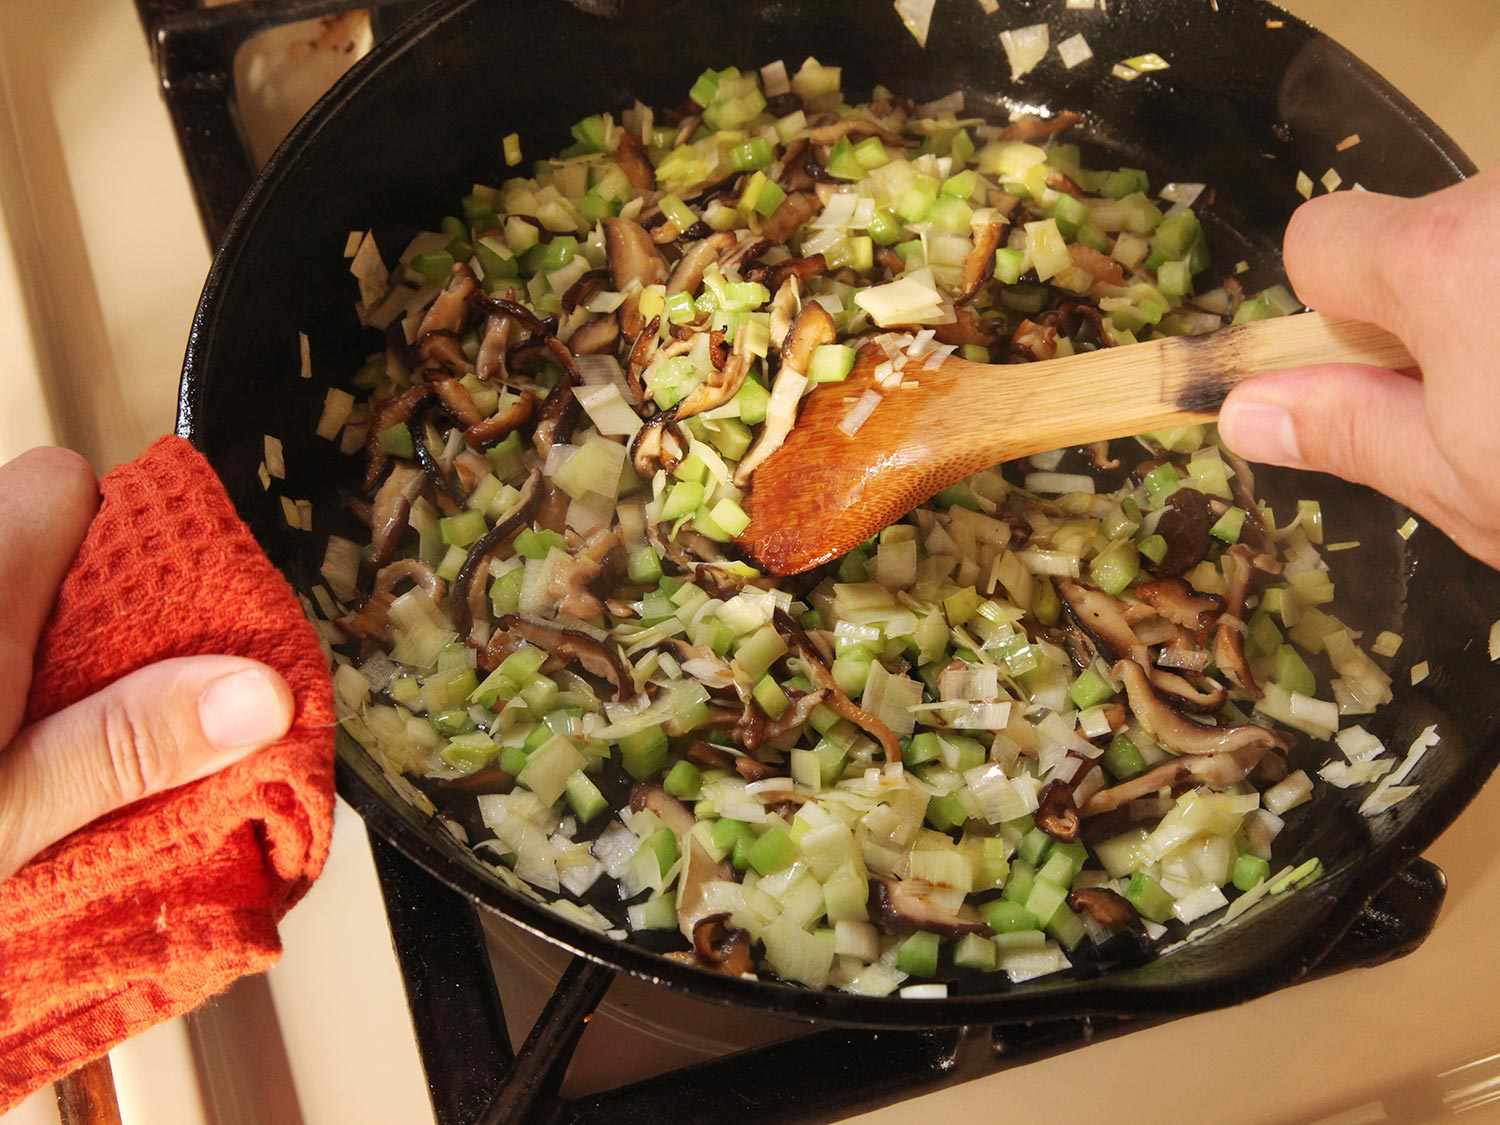 Sautéing香菇和香料放在铸铁煎锅里。